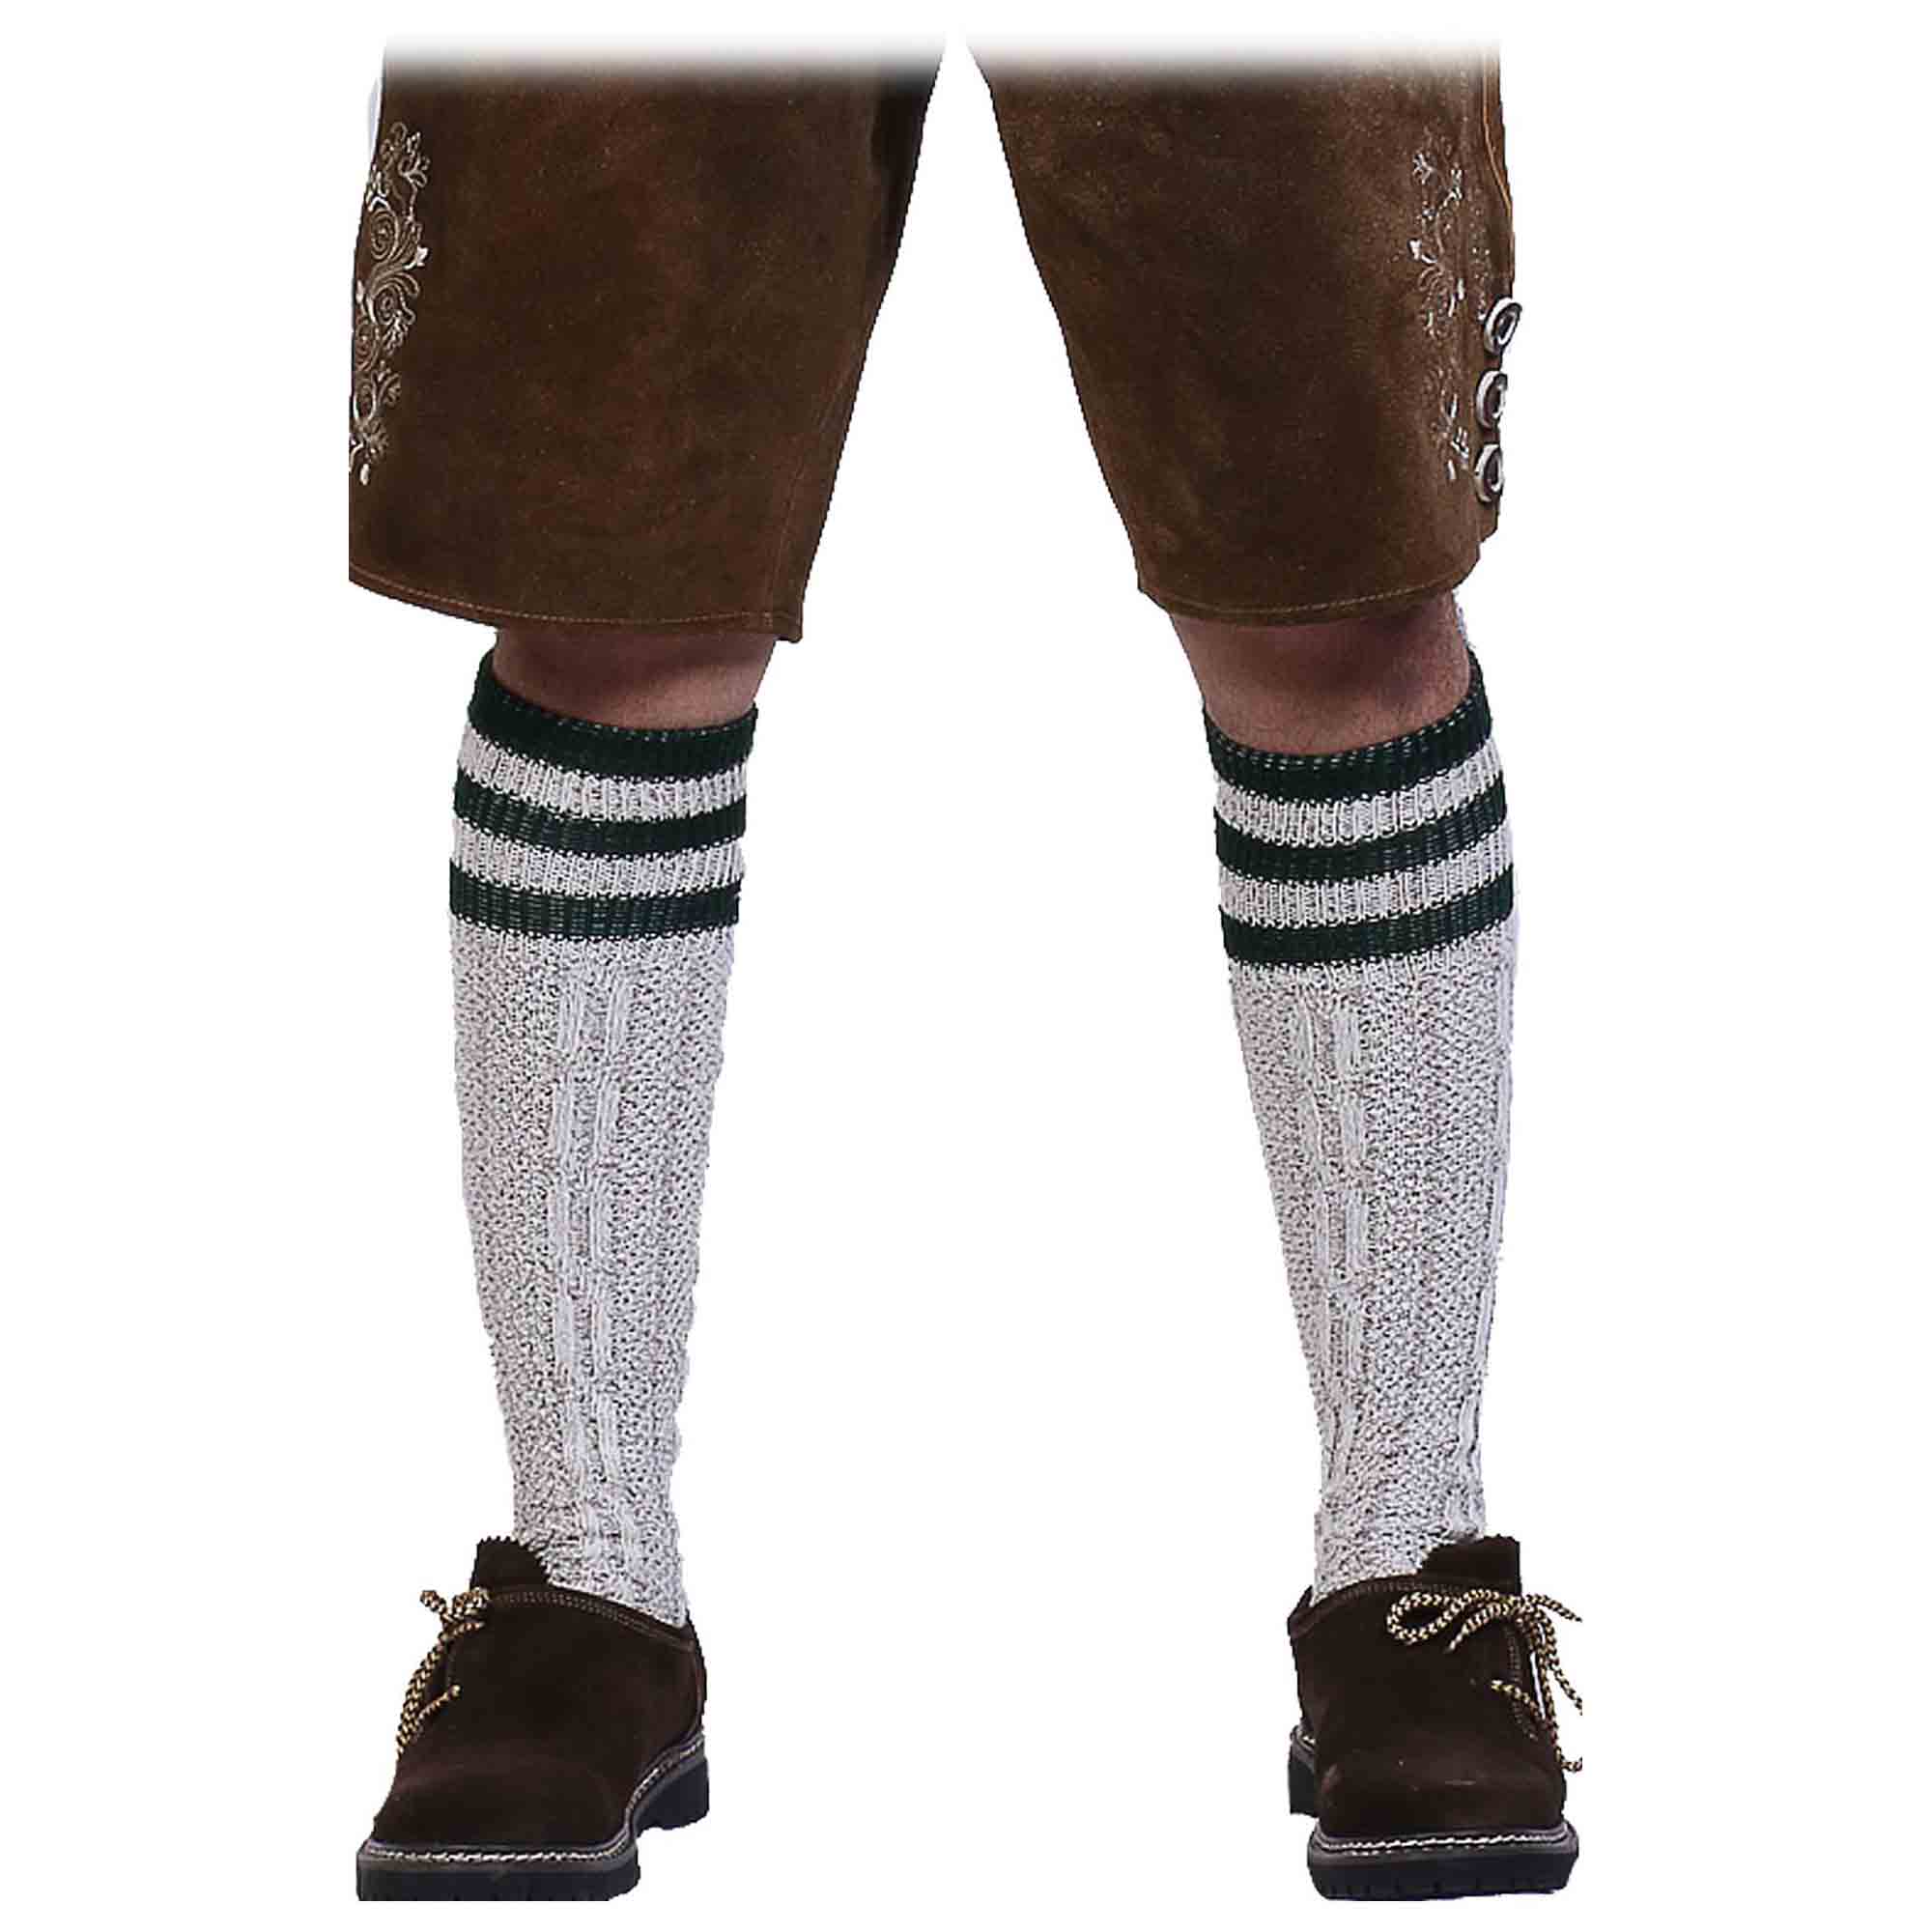 Long Embroidered German Lederhosen Socks Bavarian Socks for Traditional Oktoberfest Outfit Trachten 